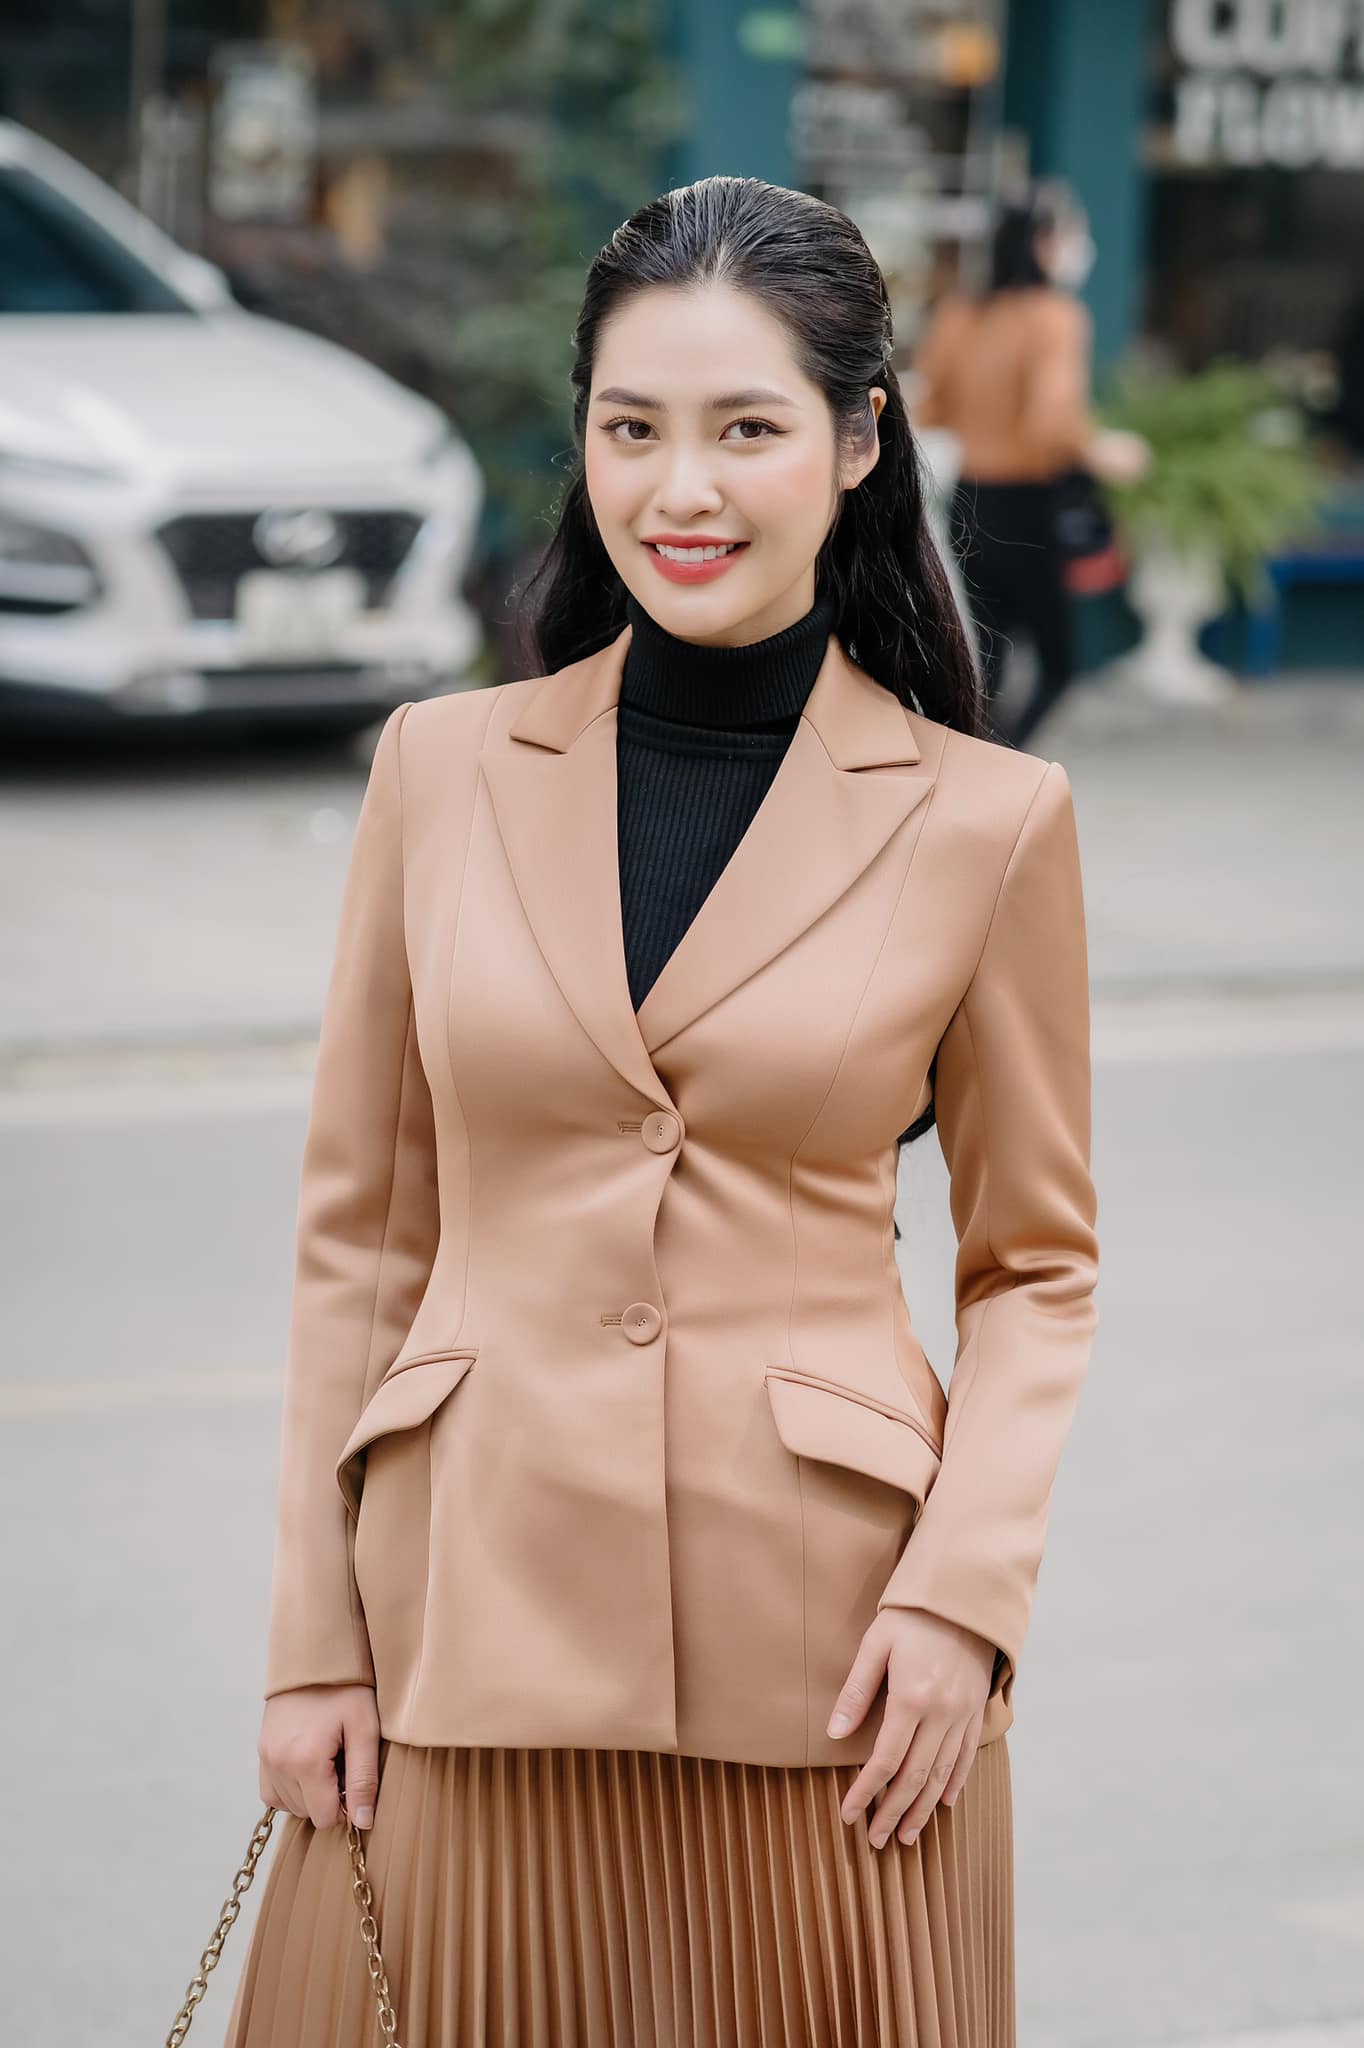 Hoa hậu Nông Thúy Hằng: “Tôi sẽ cống hiến nếu được làm MC, BTV tại VTV” - Ảnh 5.